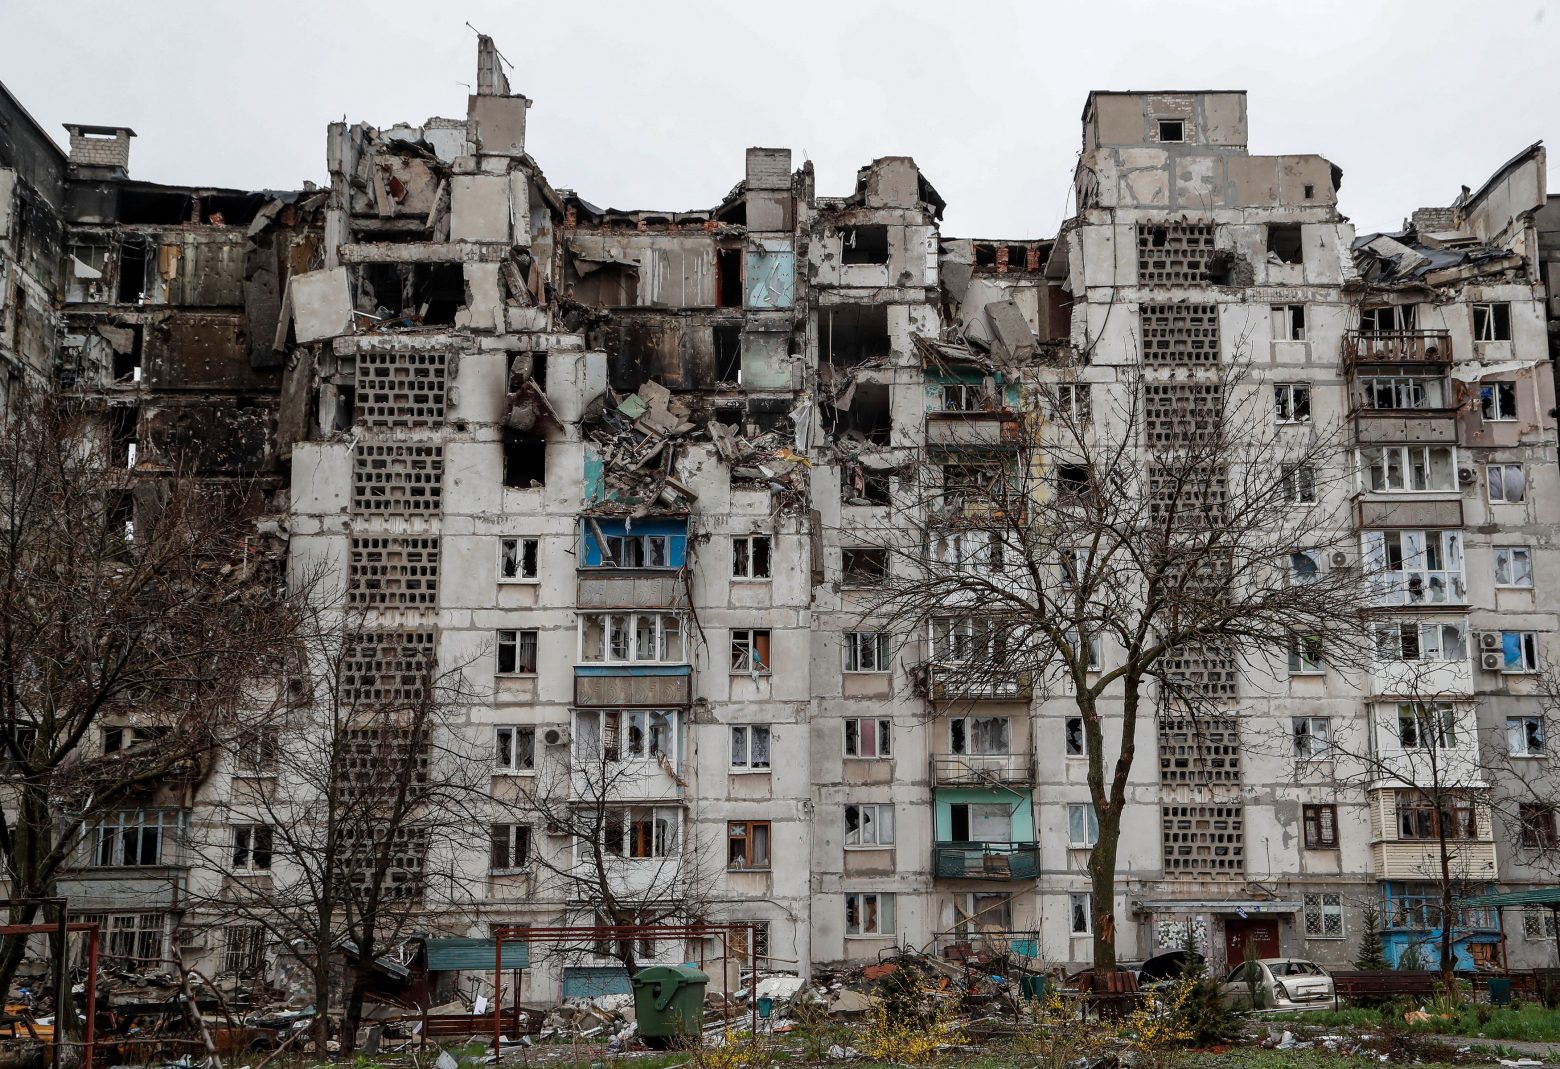 Μαριούπολη: «Εκκαθάριση του αστικού ιστού από τις Ουκρανικές δυνάμεις» ανακοίνωσε η Ρωσία - «Καταθέστε τα όπλα και παραδοθείτε»